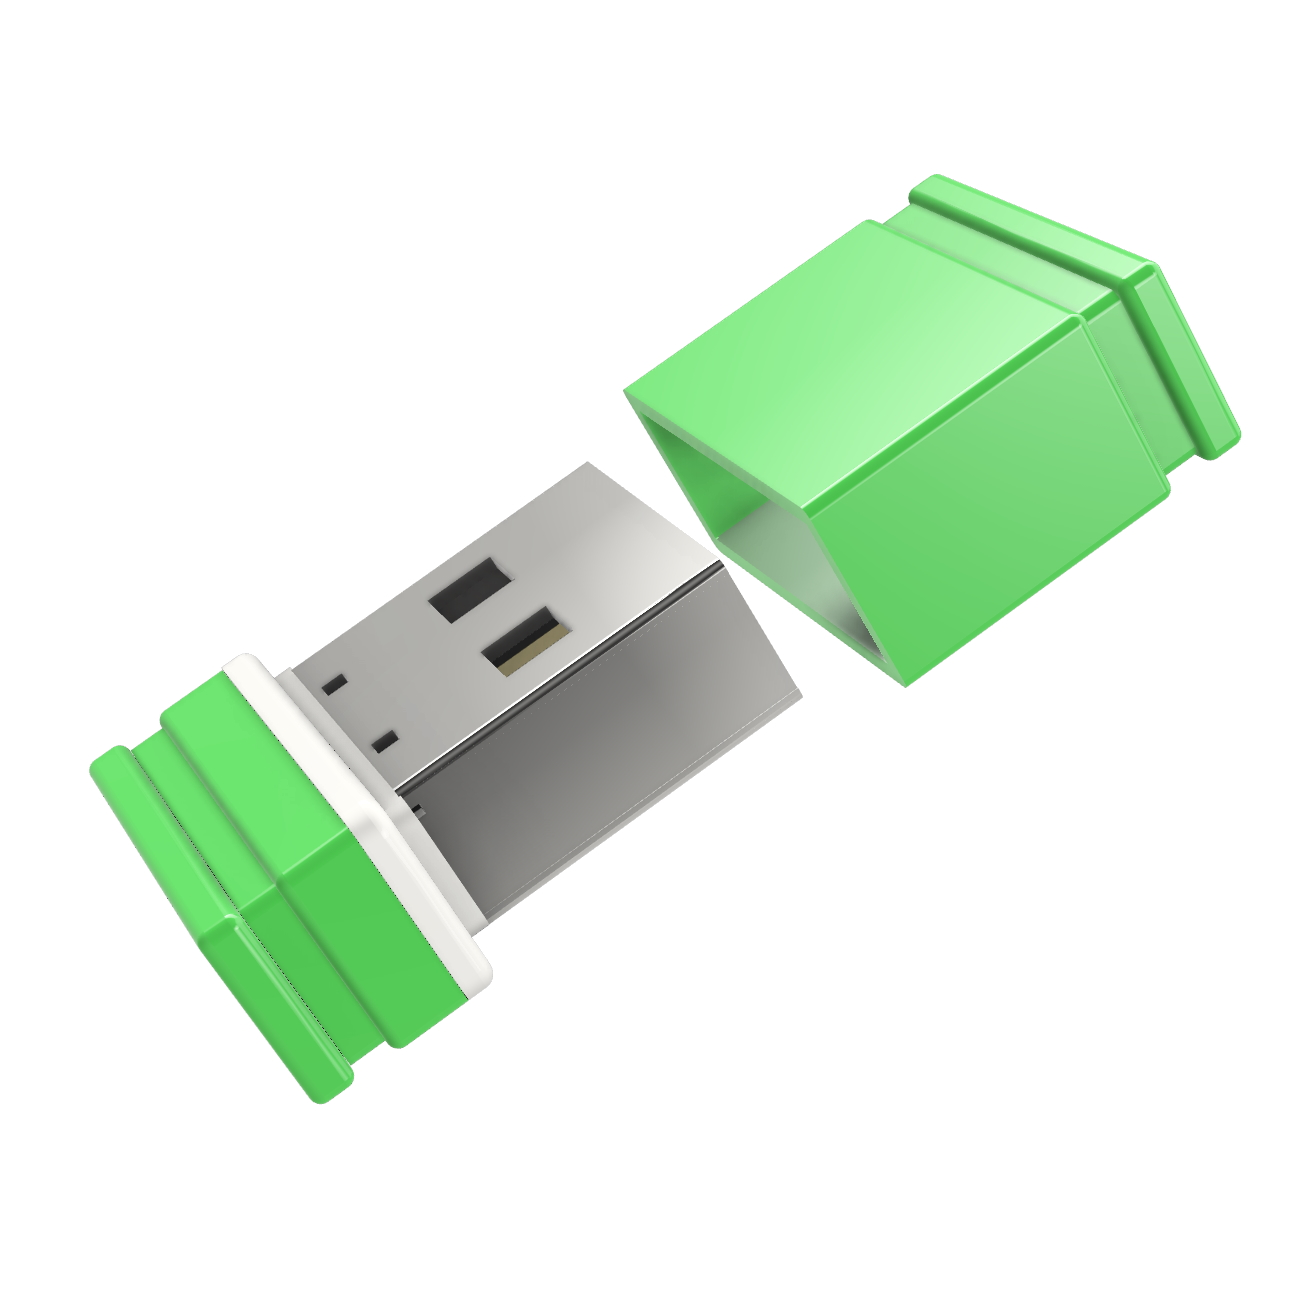 P1 GERMANY (Grün/Weiss, USB ®ULTRA GB) USB-Stick 2 Mini